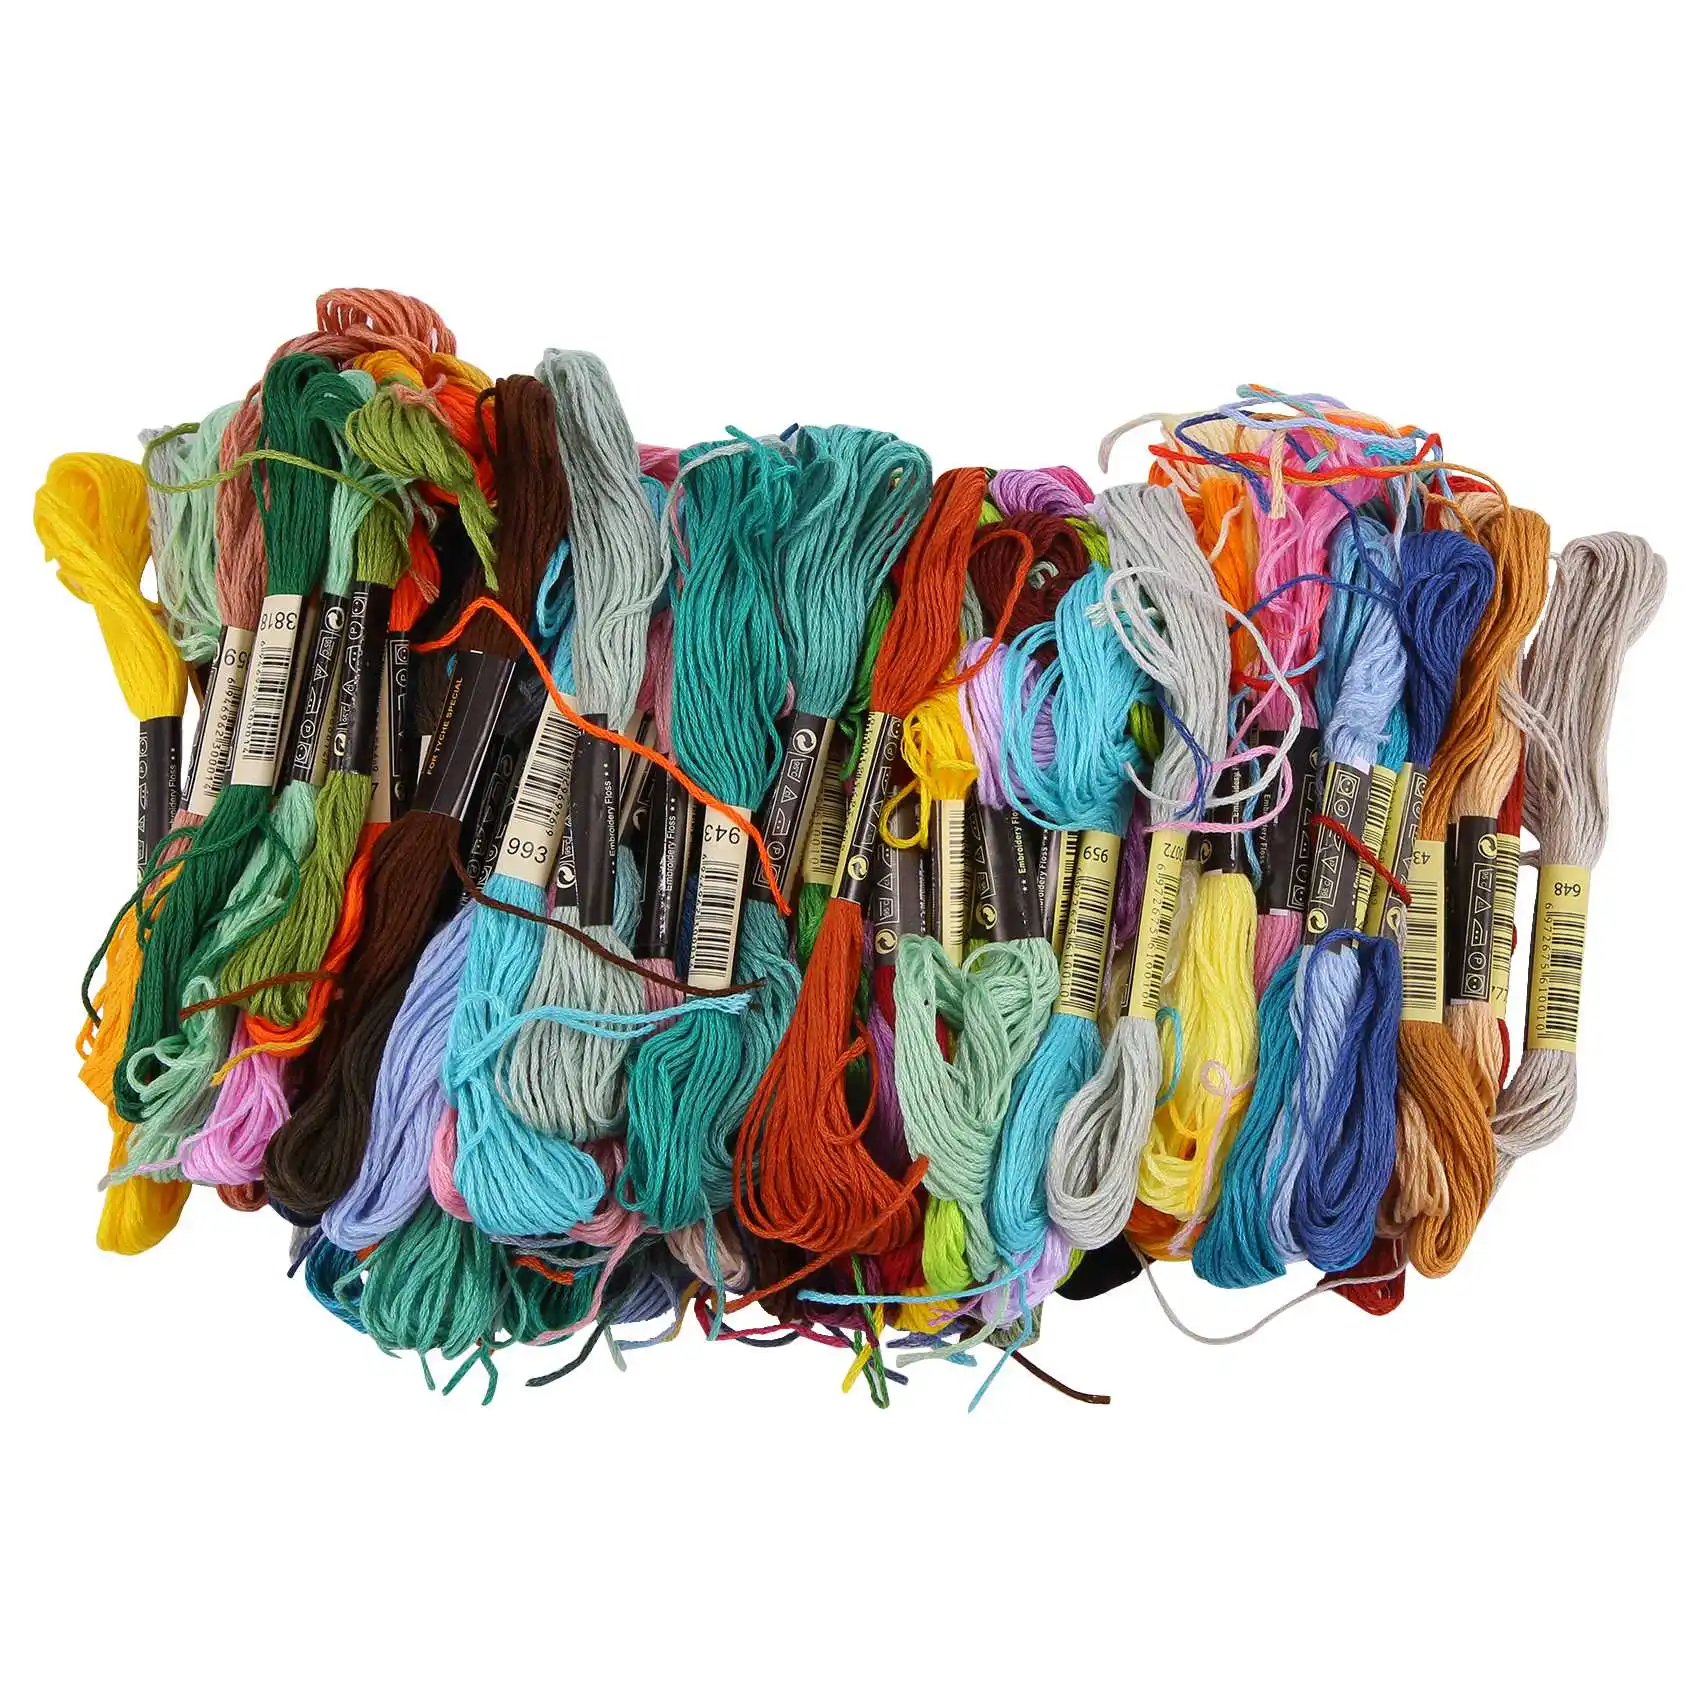 100 Мотков ниток для вышивания Разных цветов Хлопчатобумажная мулине для вышивания с 12 шт. Бобины для мулине для вязания Cross Stitch Pro